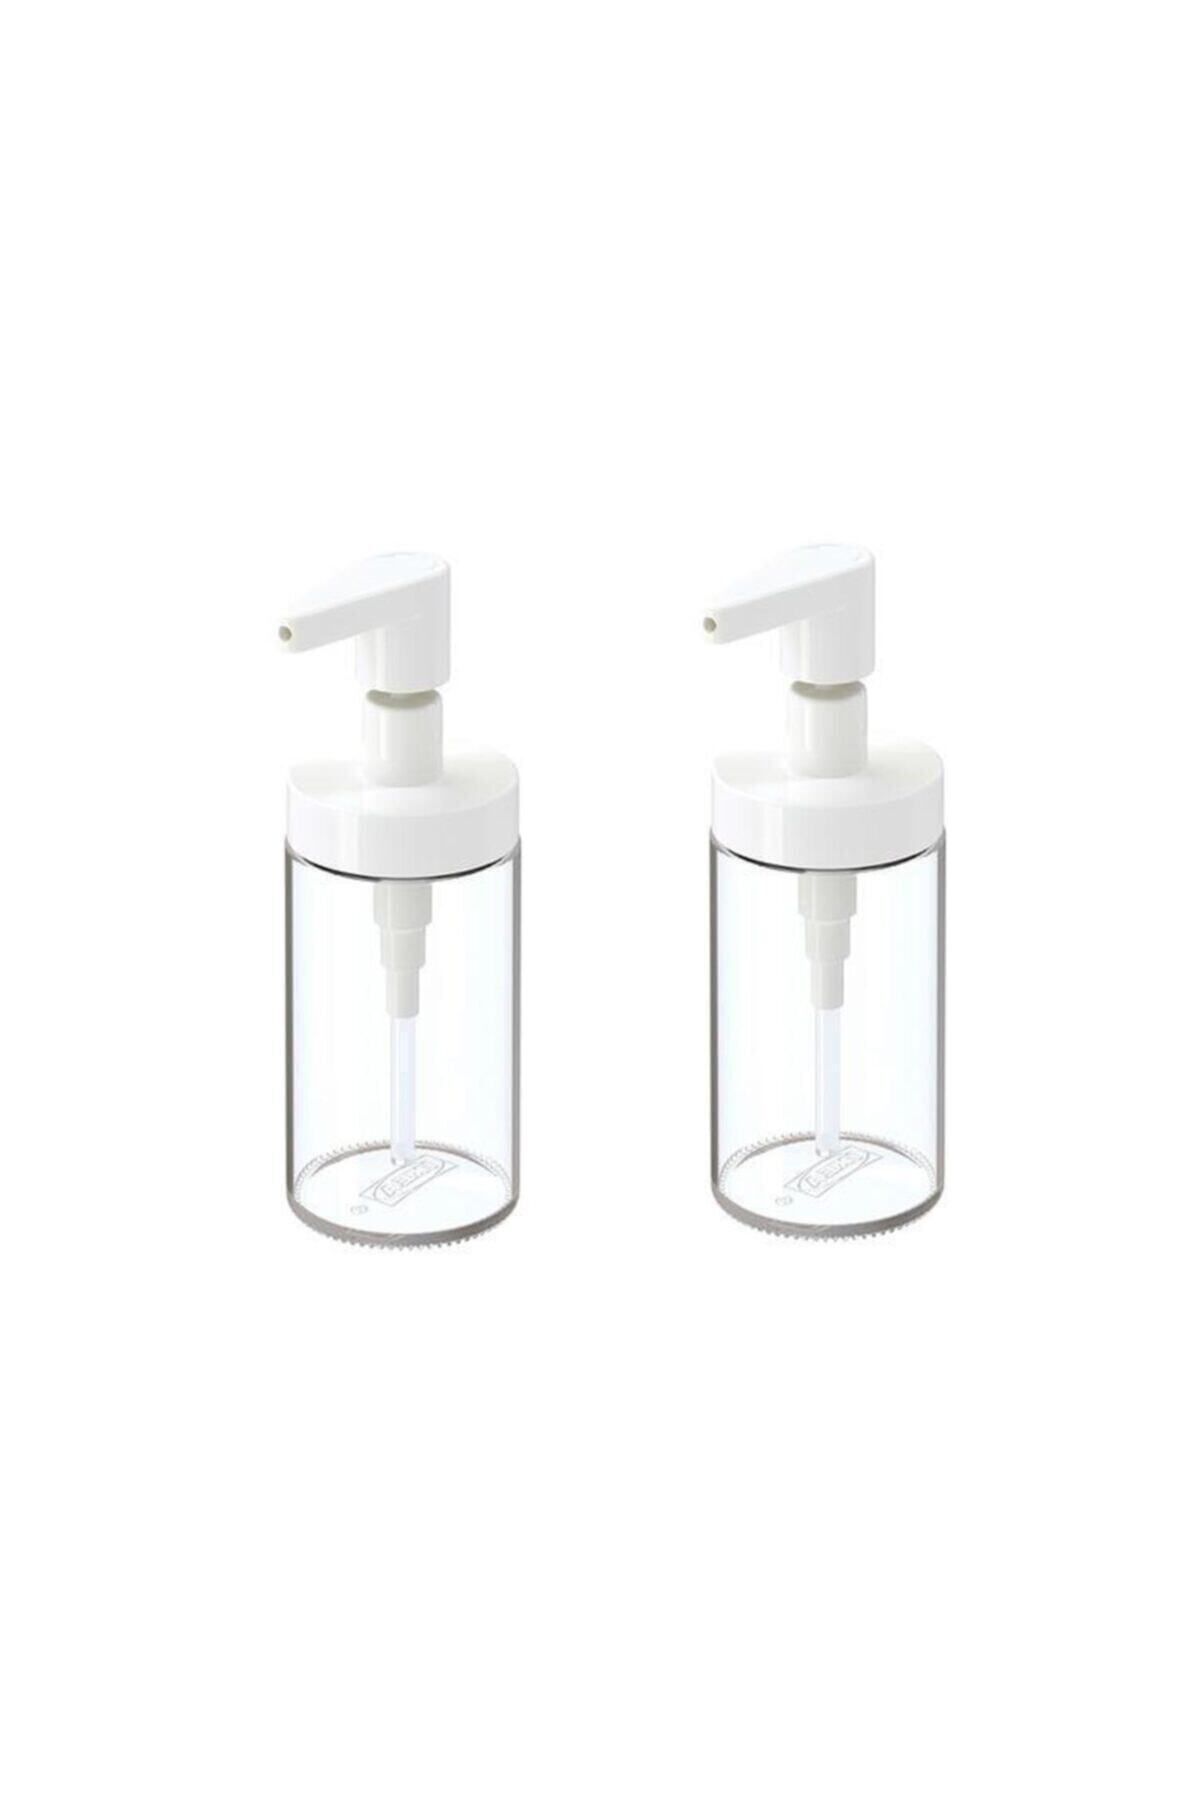 IKEA Tackan Sıvı Sabunluk Cam - Beyaz Kapaklı X 2 Adet